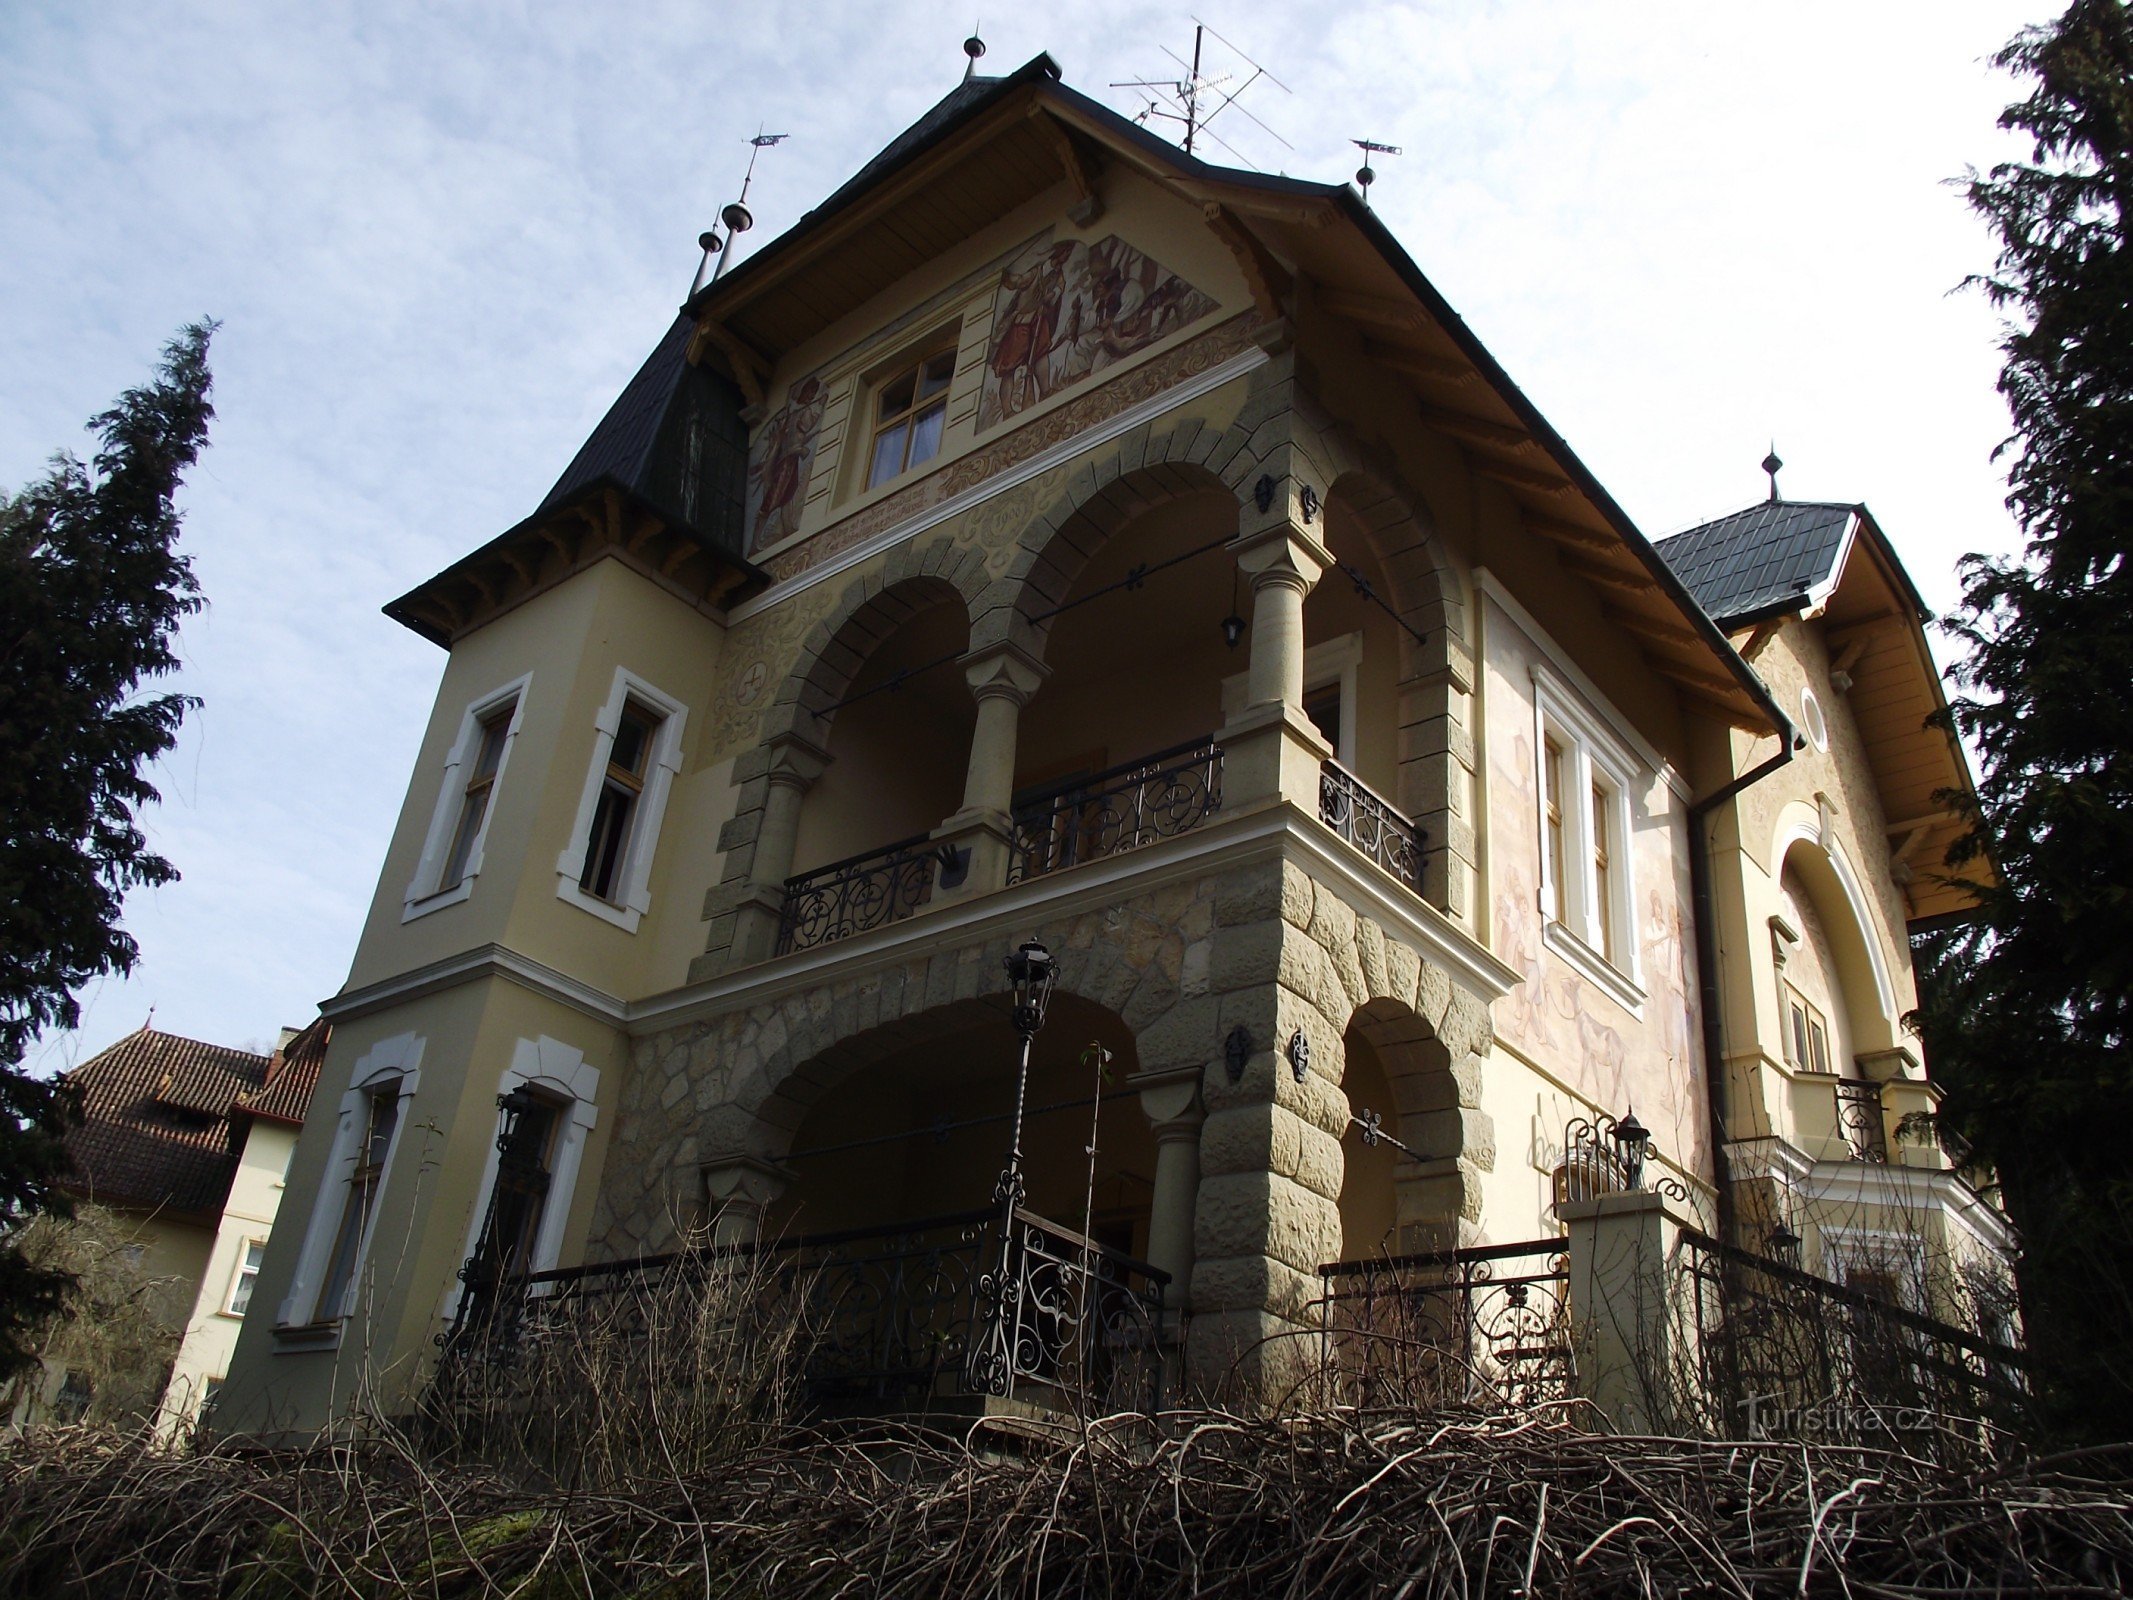 Luhačovice - Biệt thự của Chính phủ (Vila Samohrd)